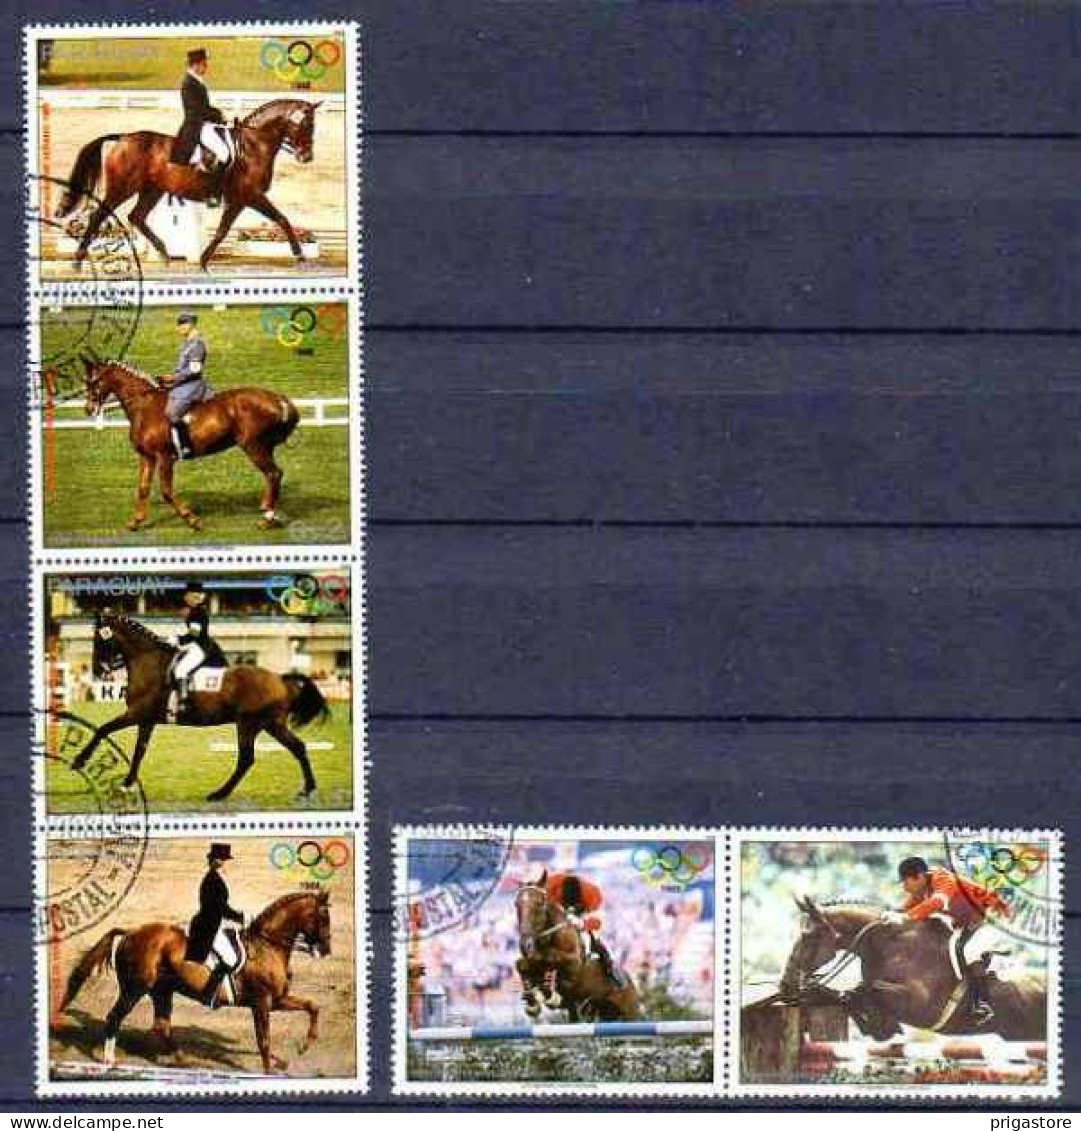 Chevaux Paraguay 1988 (16) Yvert N° 2343 à 2346 Oblitéré Used - Horses